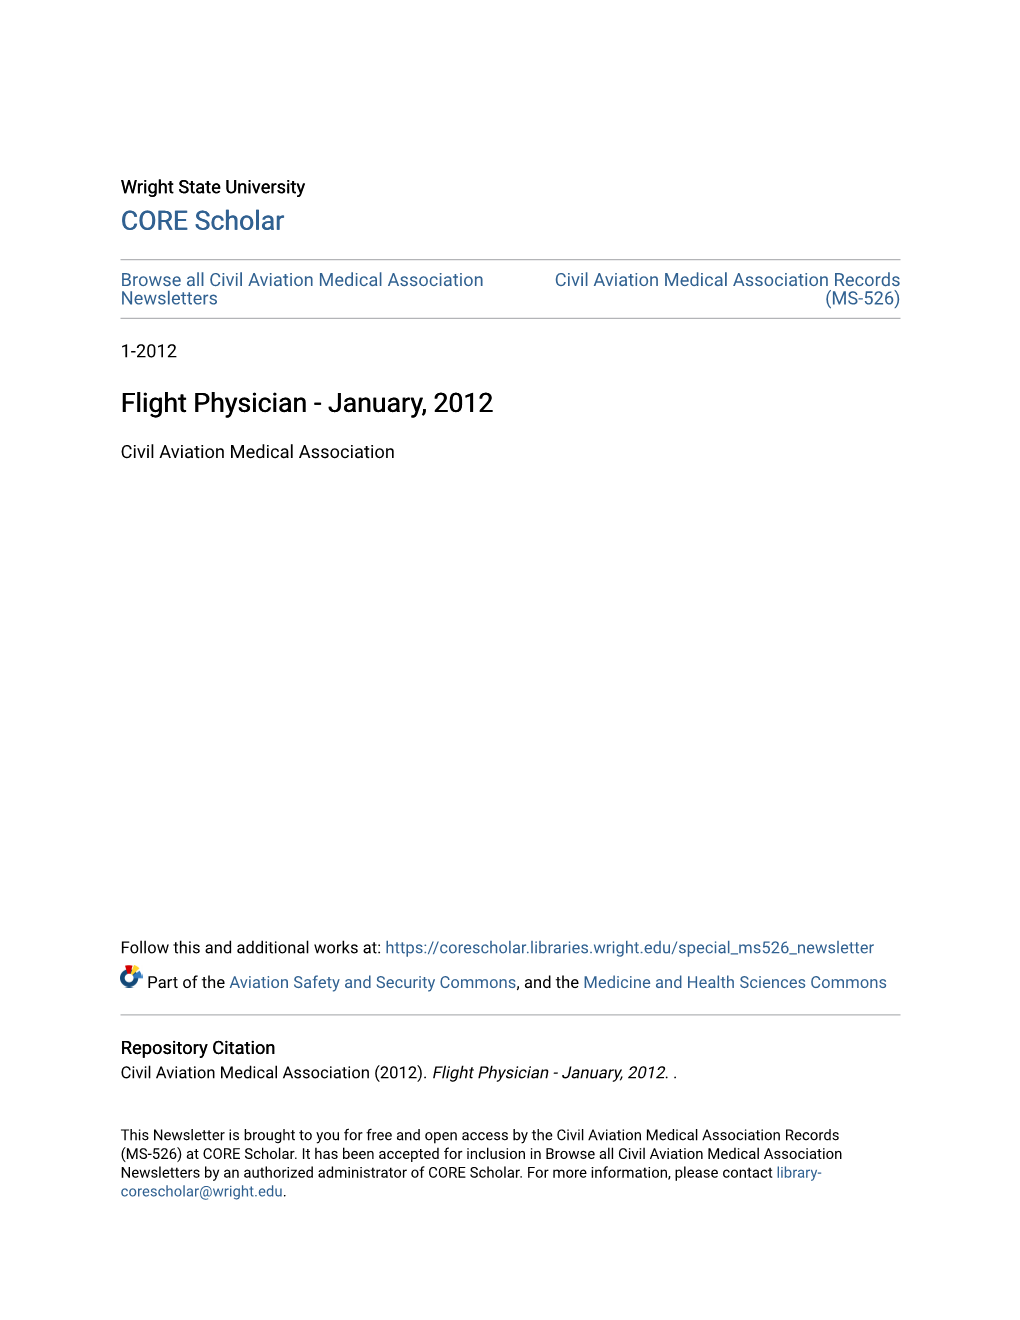 Flight Physician - January, 2012